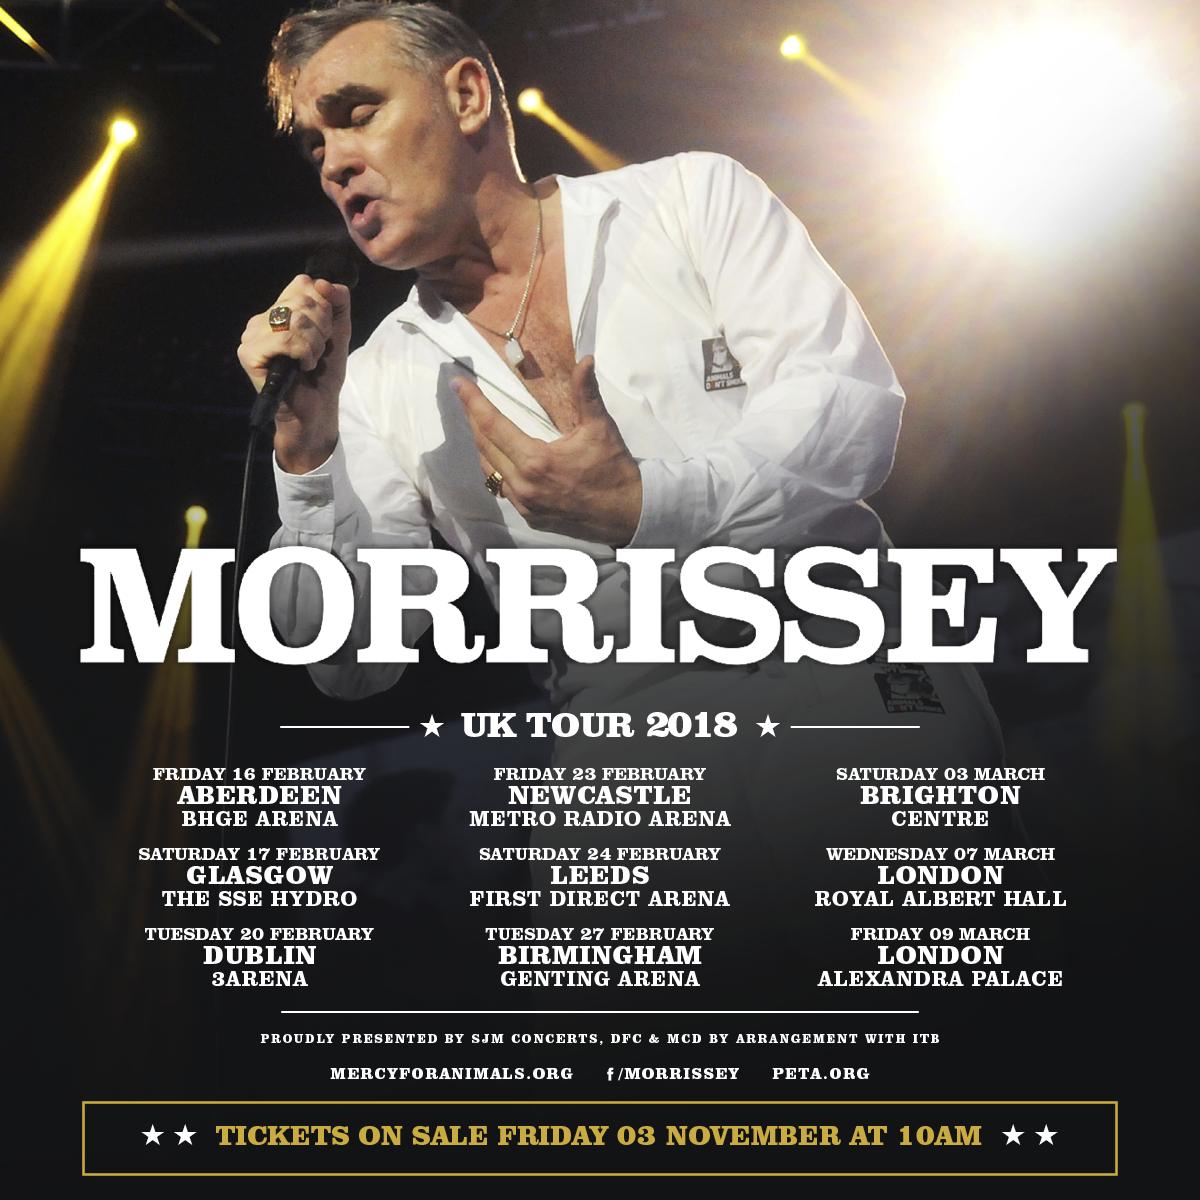 2018 UK tour announced Morrisseysolo